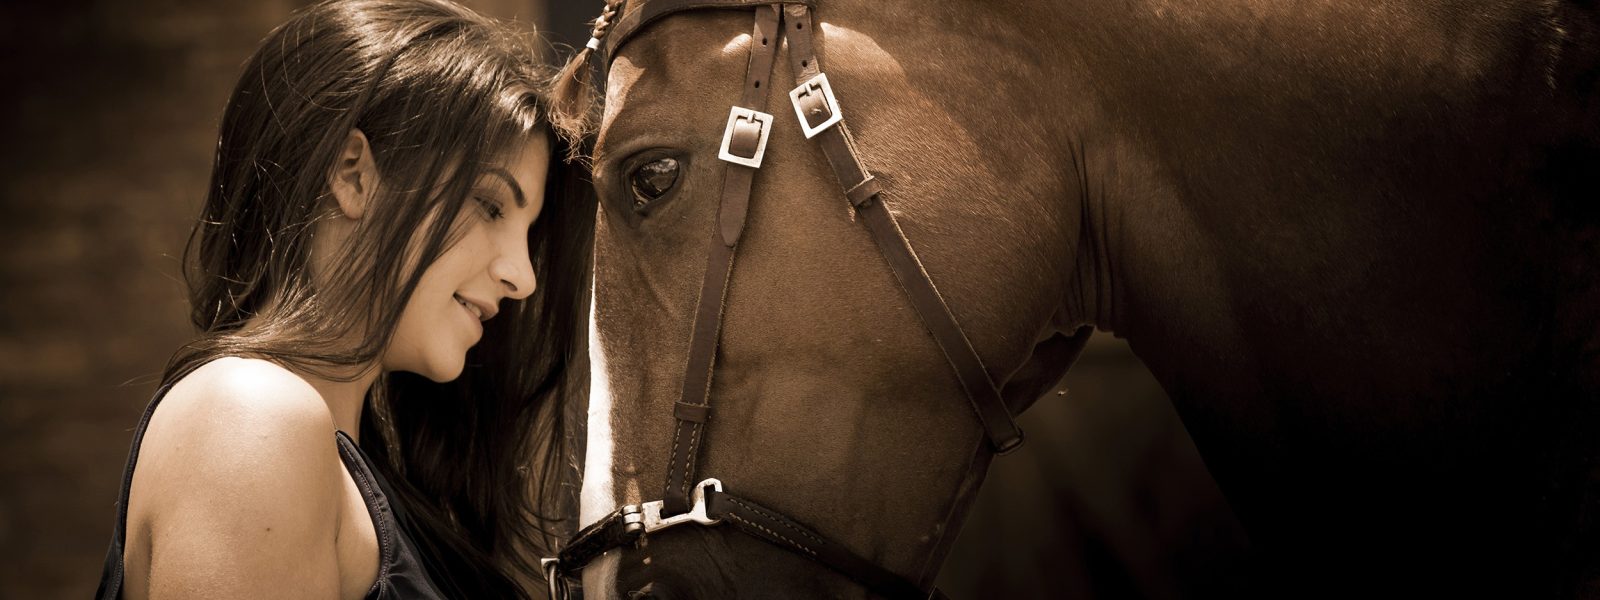 Fotografia profissional com animais, cavalos, book couwntry